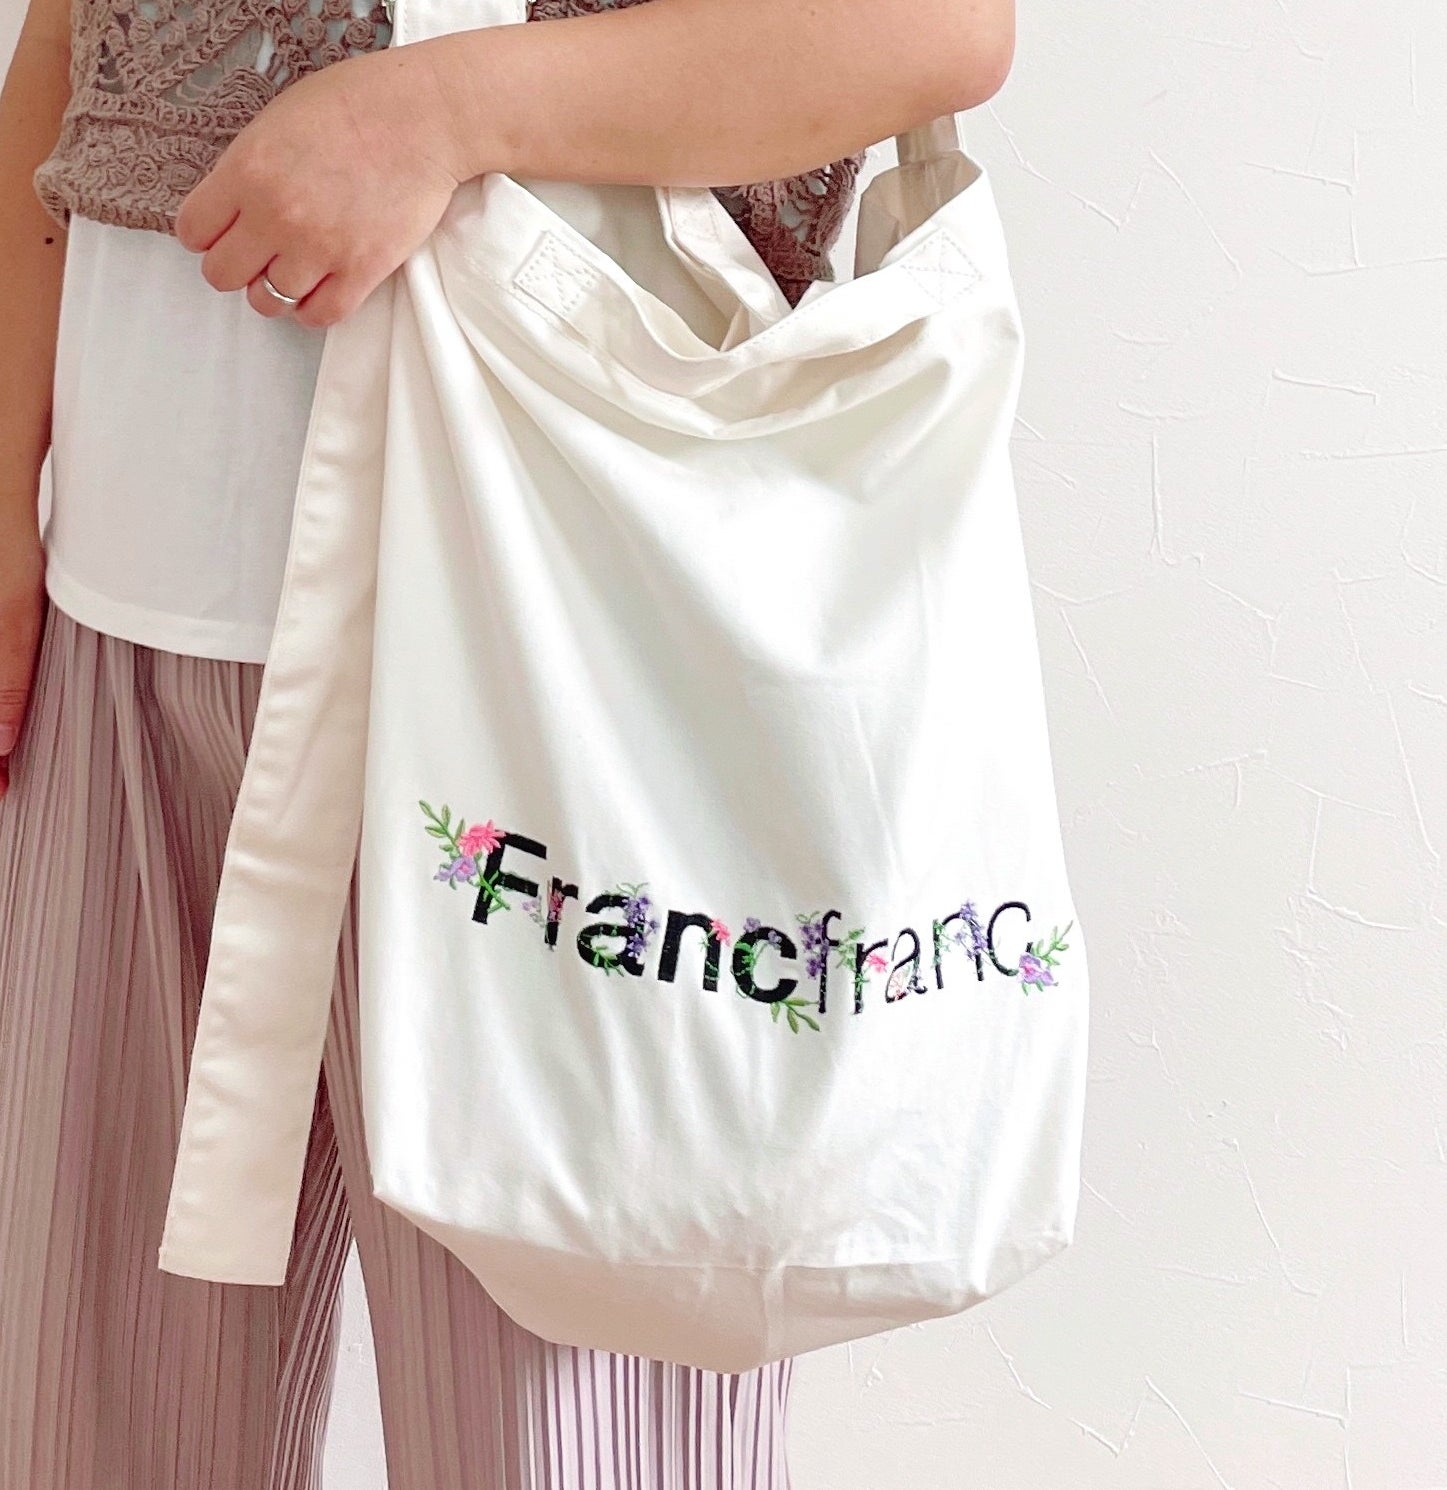 francfranc（フランフラン）のおすすめバッグ「ロゴ ショルダーバッグ フラワー刺繍」